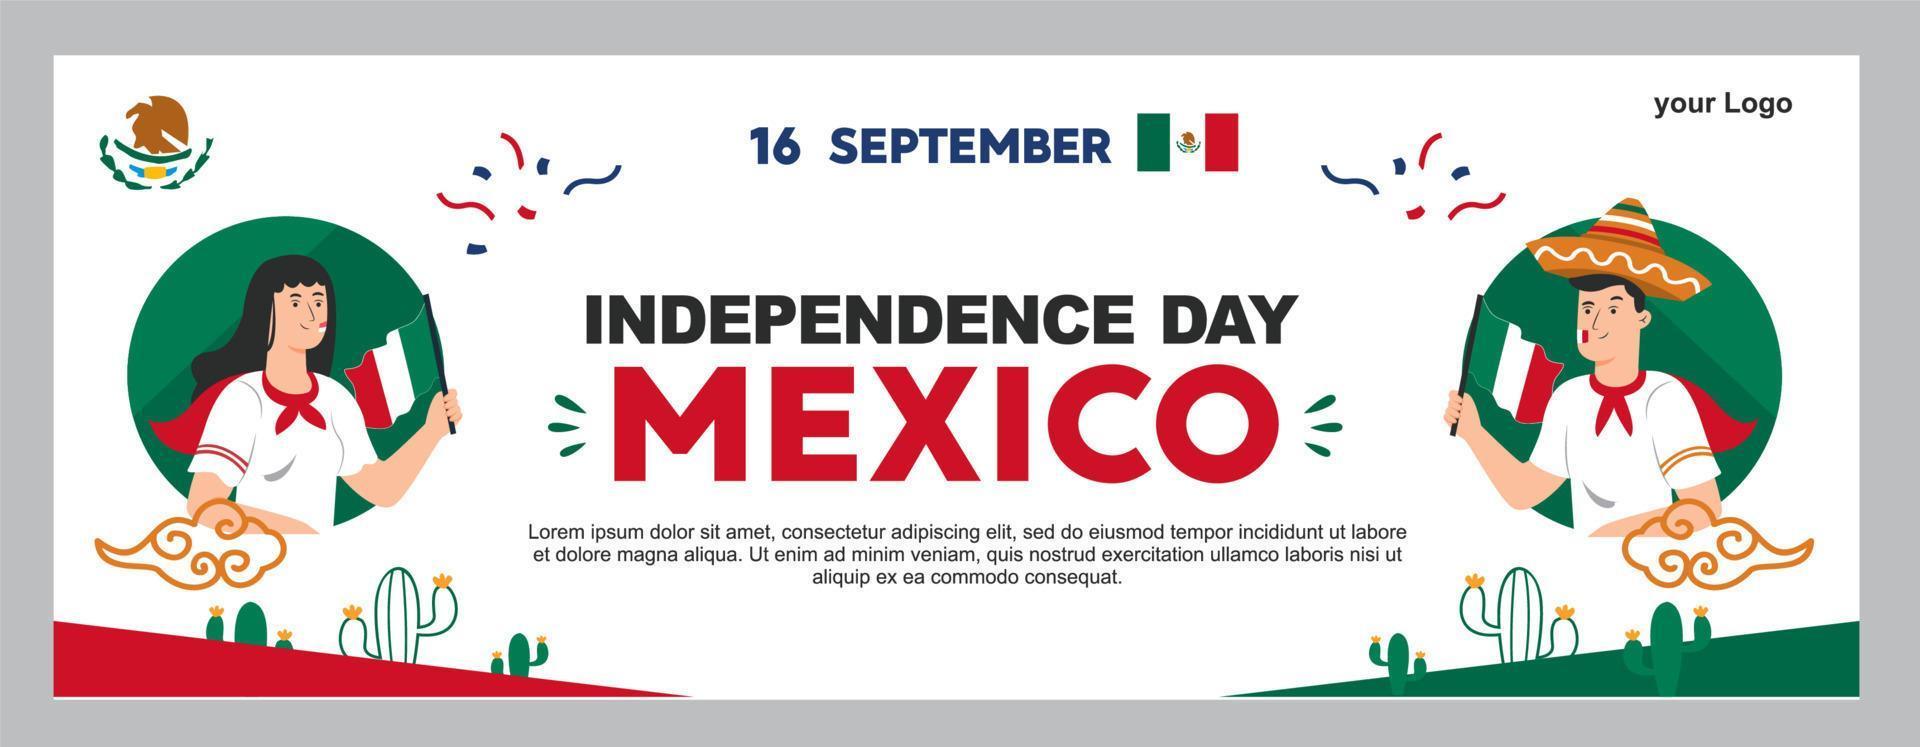 Mexicaanse onafhankelijkheidsdag illustratie, 16 september poster voor achtergrond. viva mexico vector